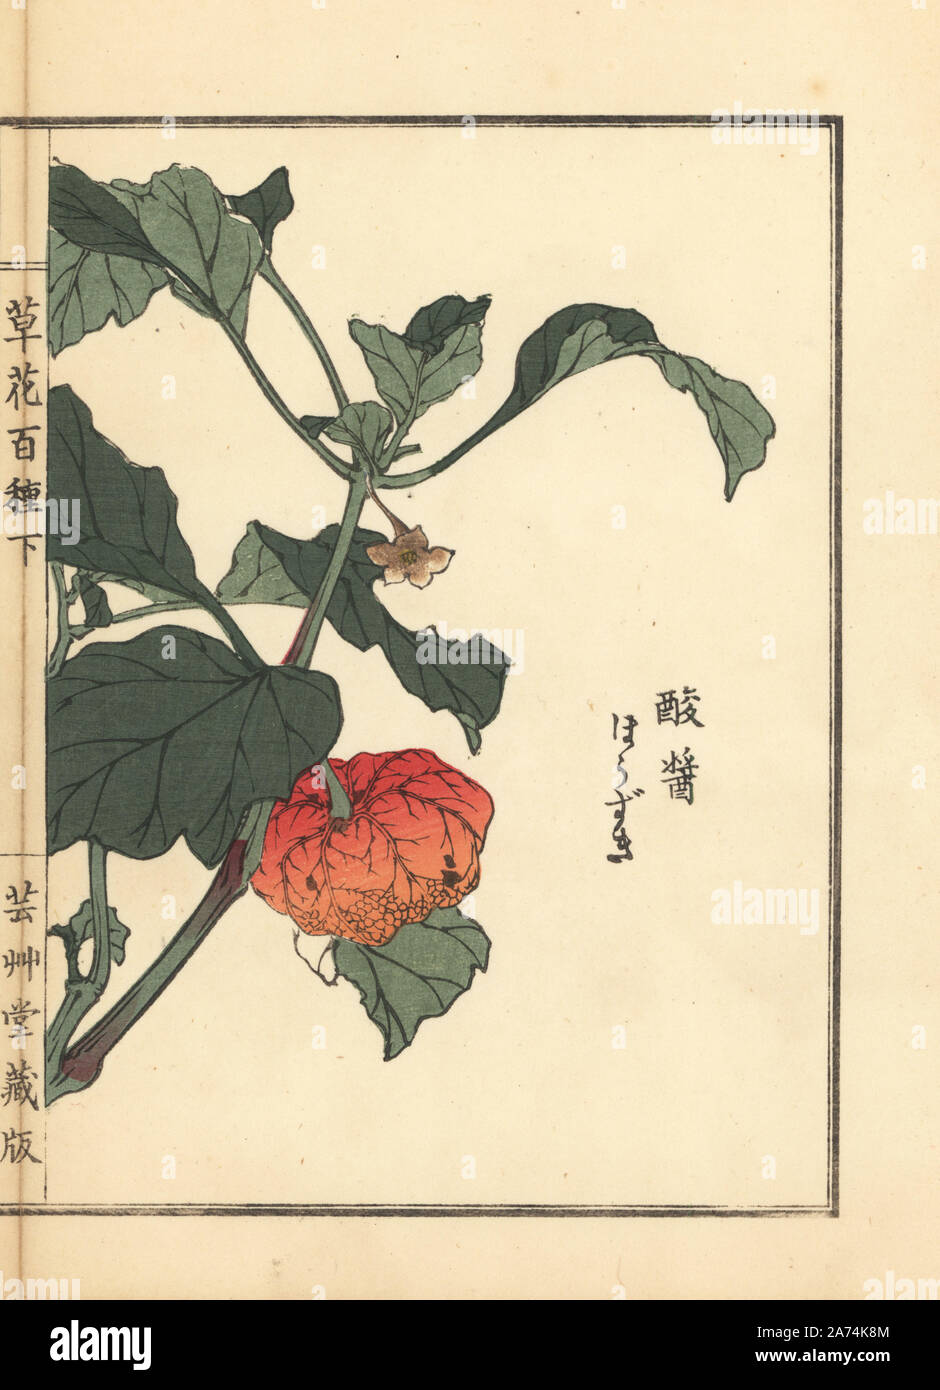 Houzuki or Chinese lantern plant, Physalis alkekengi var. franchetii. Handcoloured woodblock print by Kono Bairei from Kusa Bana Hyakushu (One Hundred Varieties of Flowers), Tokyo, Yamada, 1901. Stock Photo